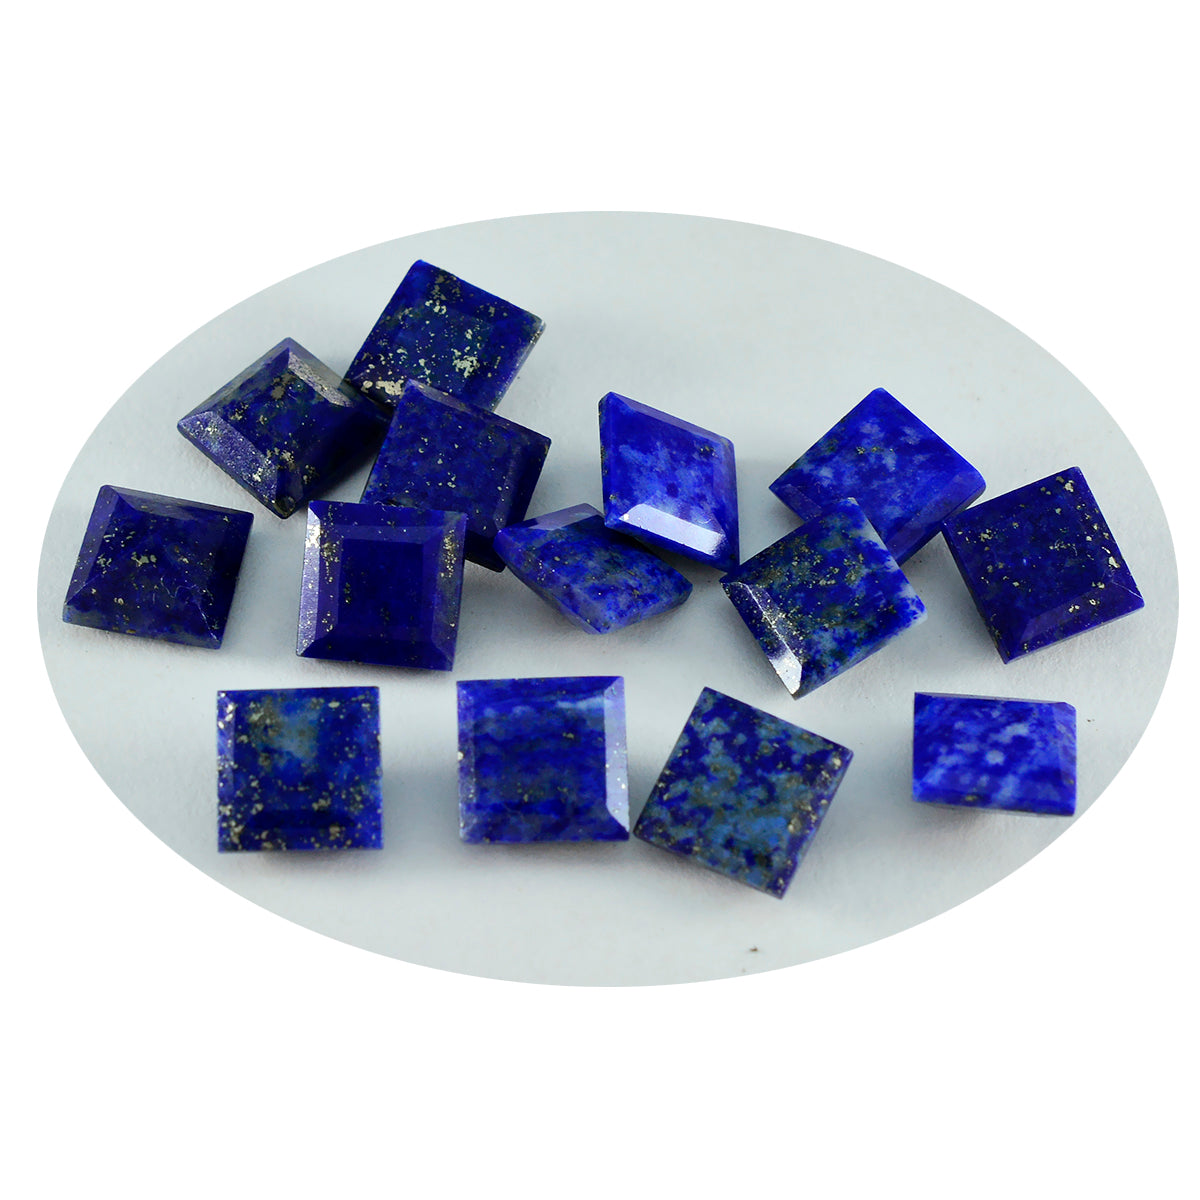 Riyogems 1PC Genuine Blue Lapis Lazuli Faceted 7x7 mm Square Shape excellent Quality Gems